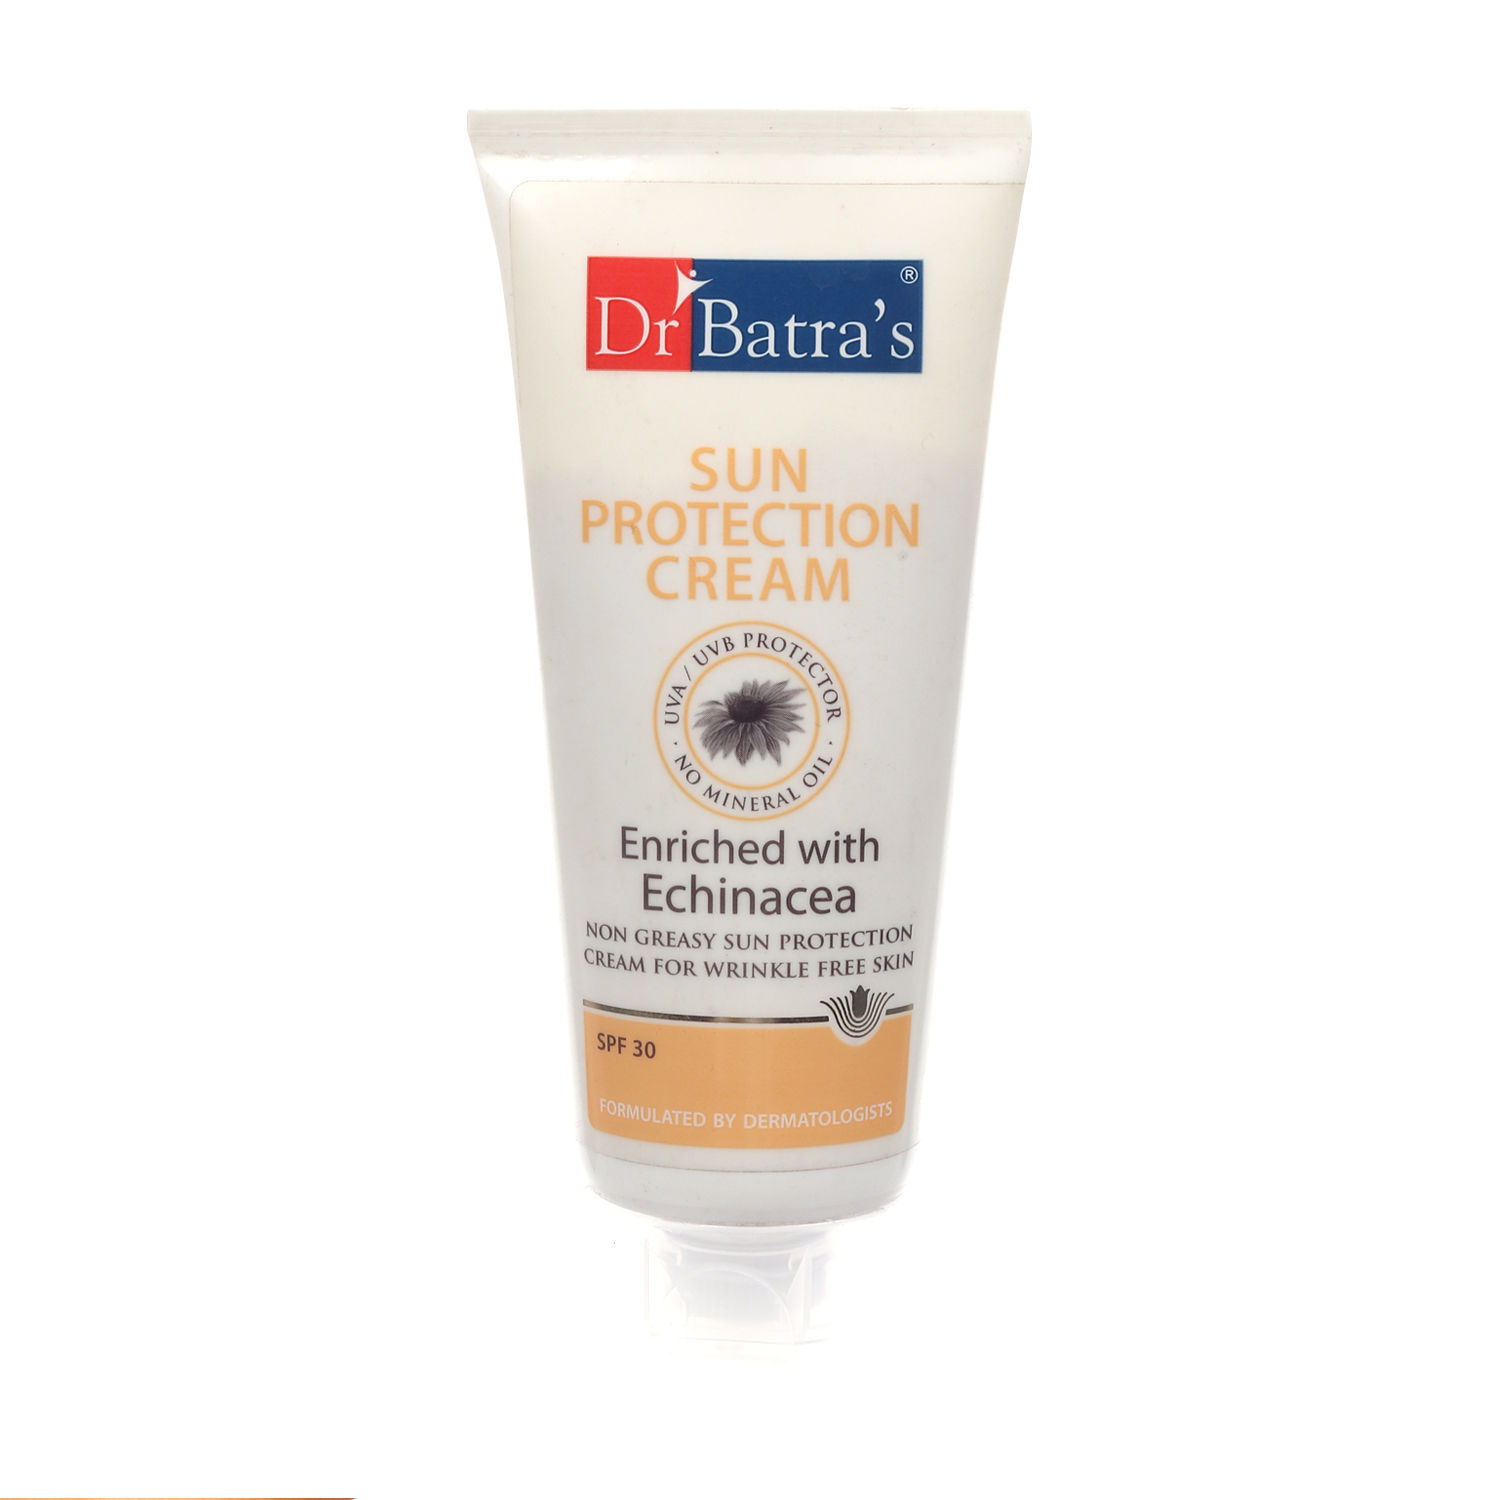 Dr Batra's Sun Protection Cream